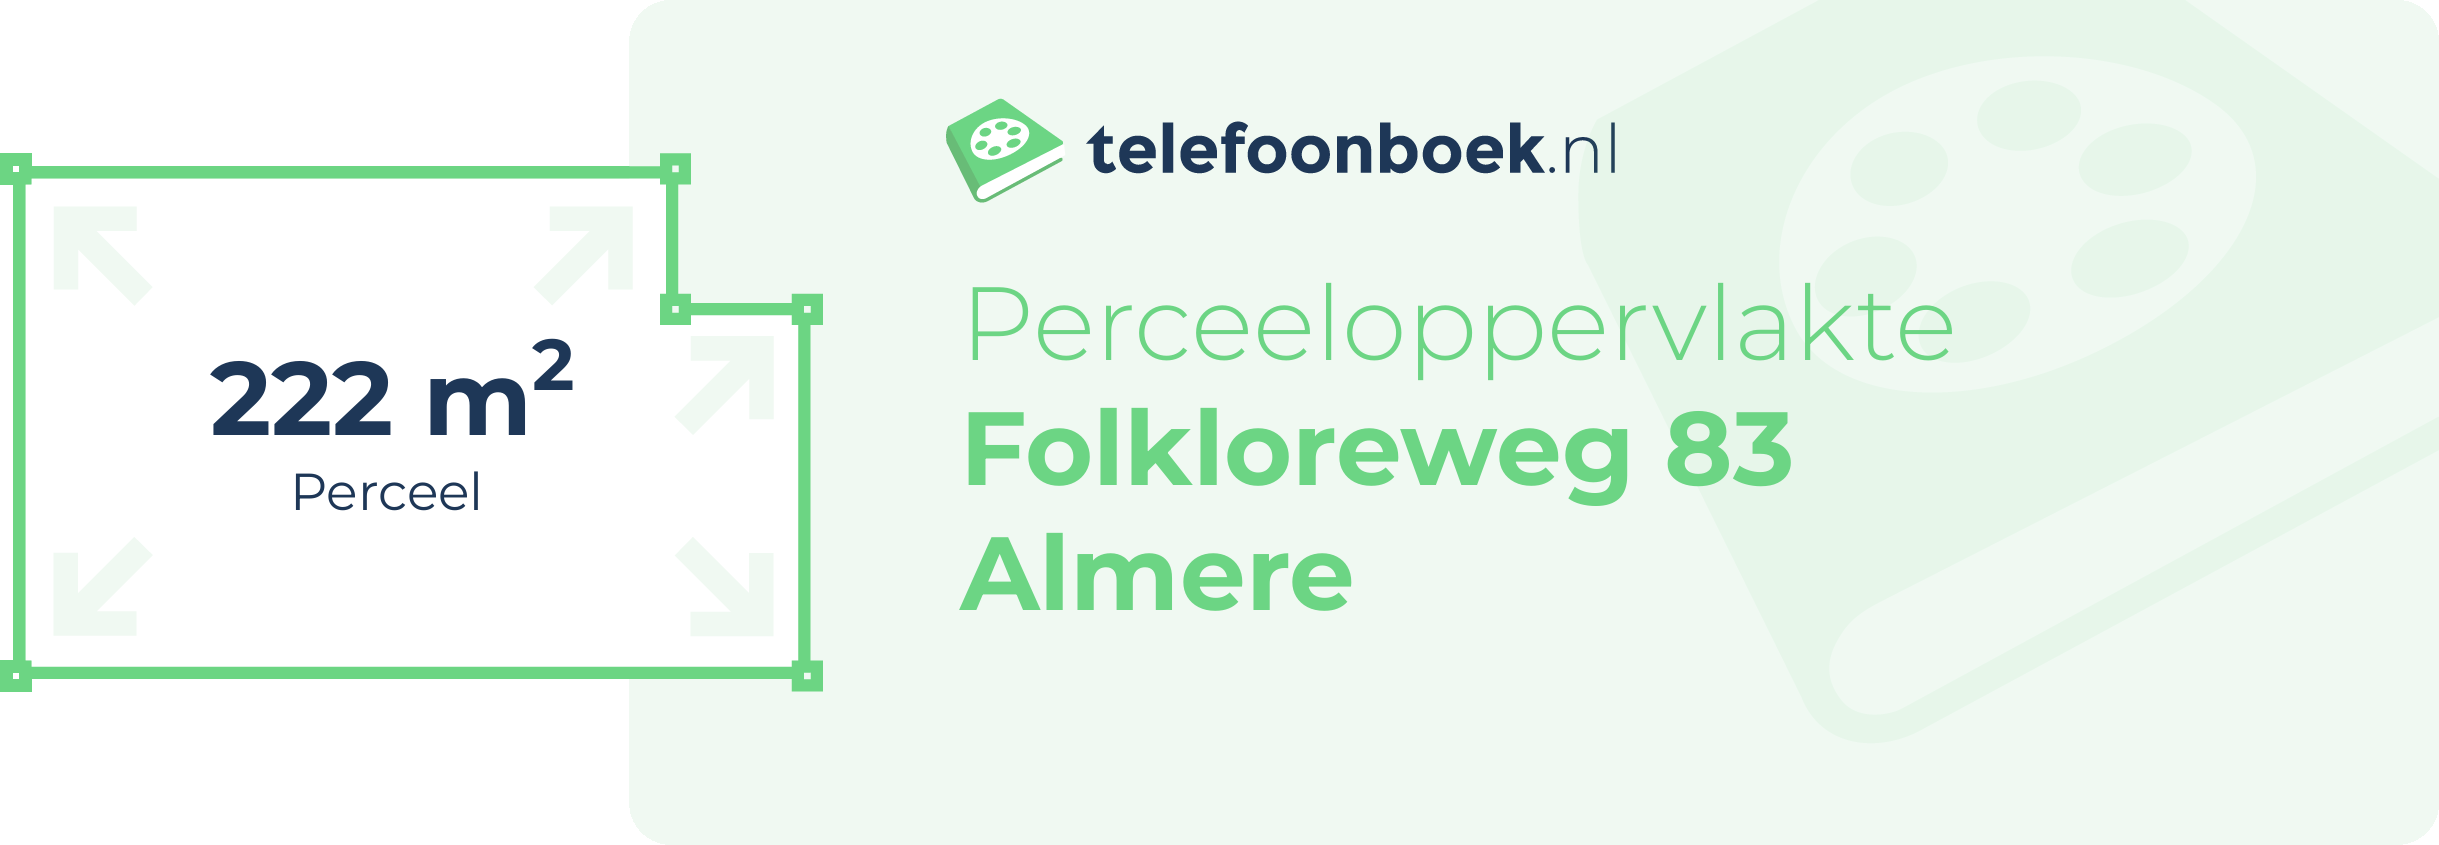 Perceeloppervlakte Folkloreweg 83 Almere